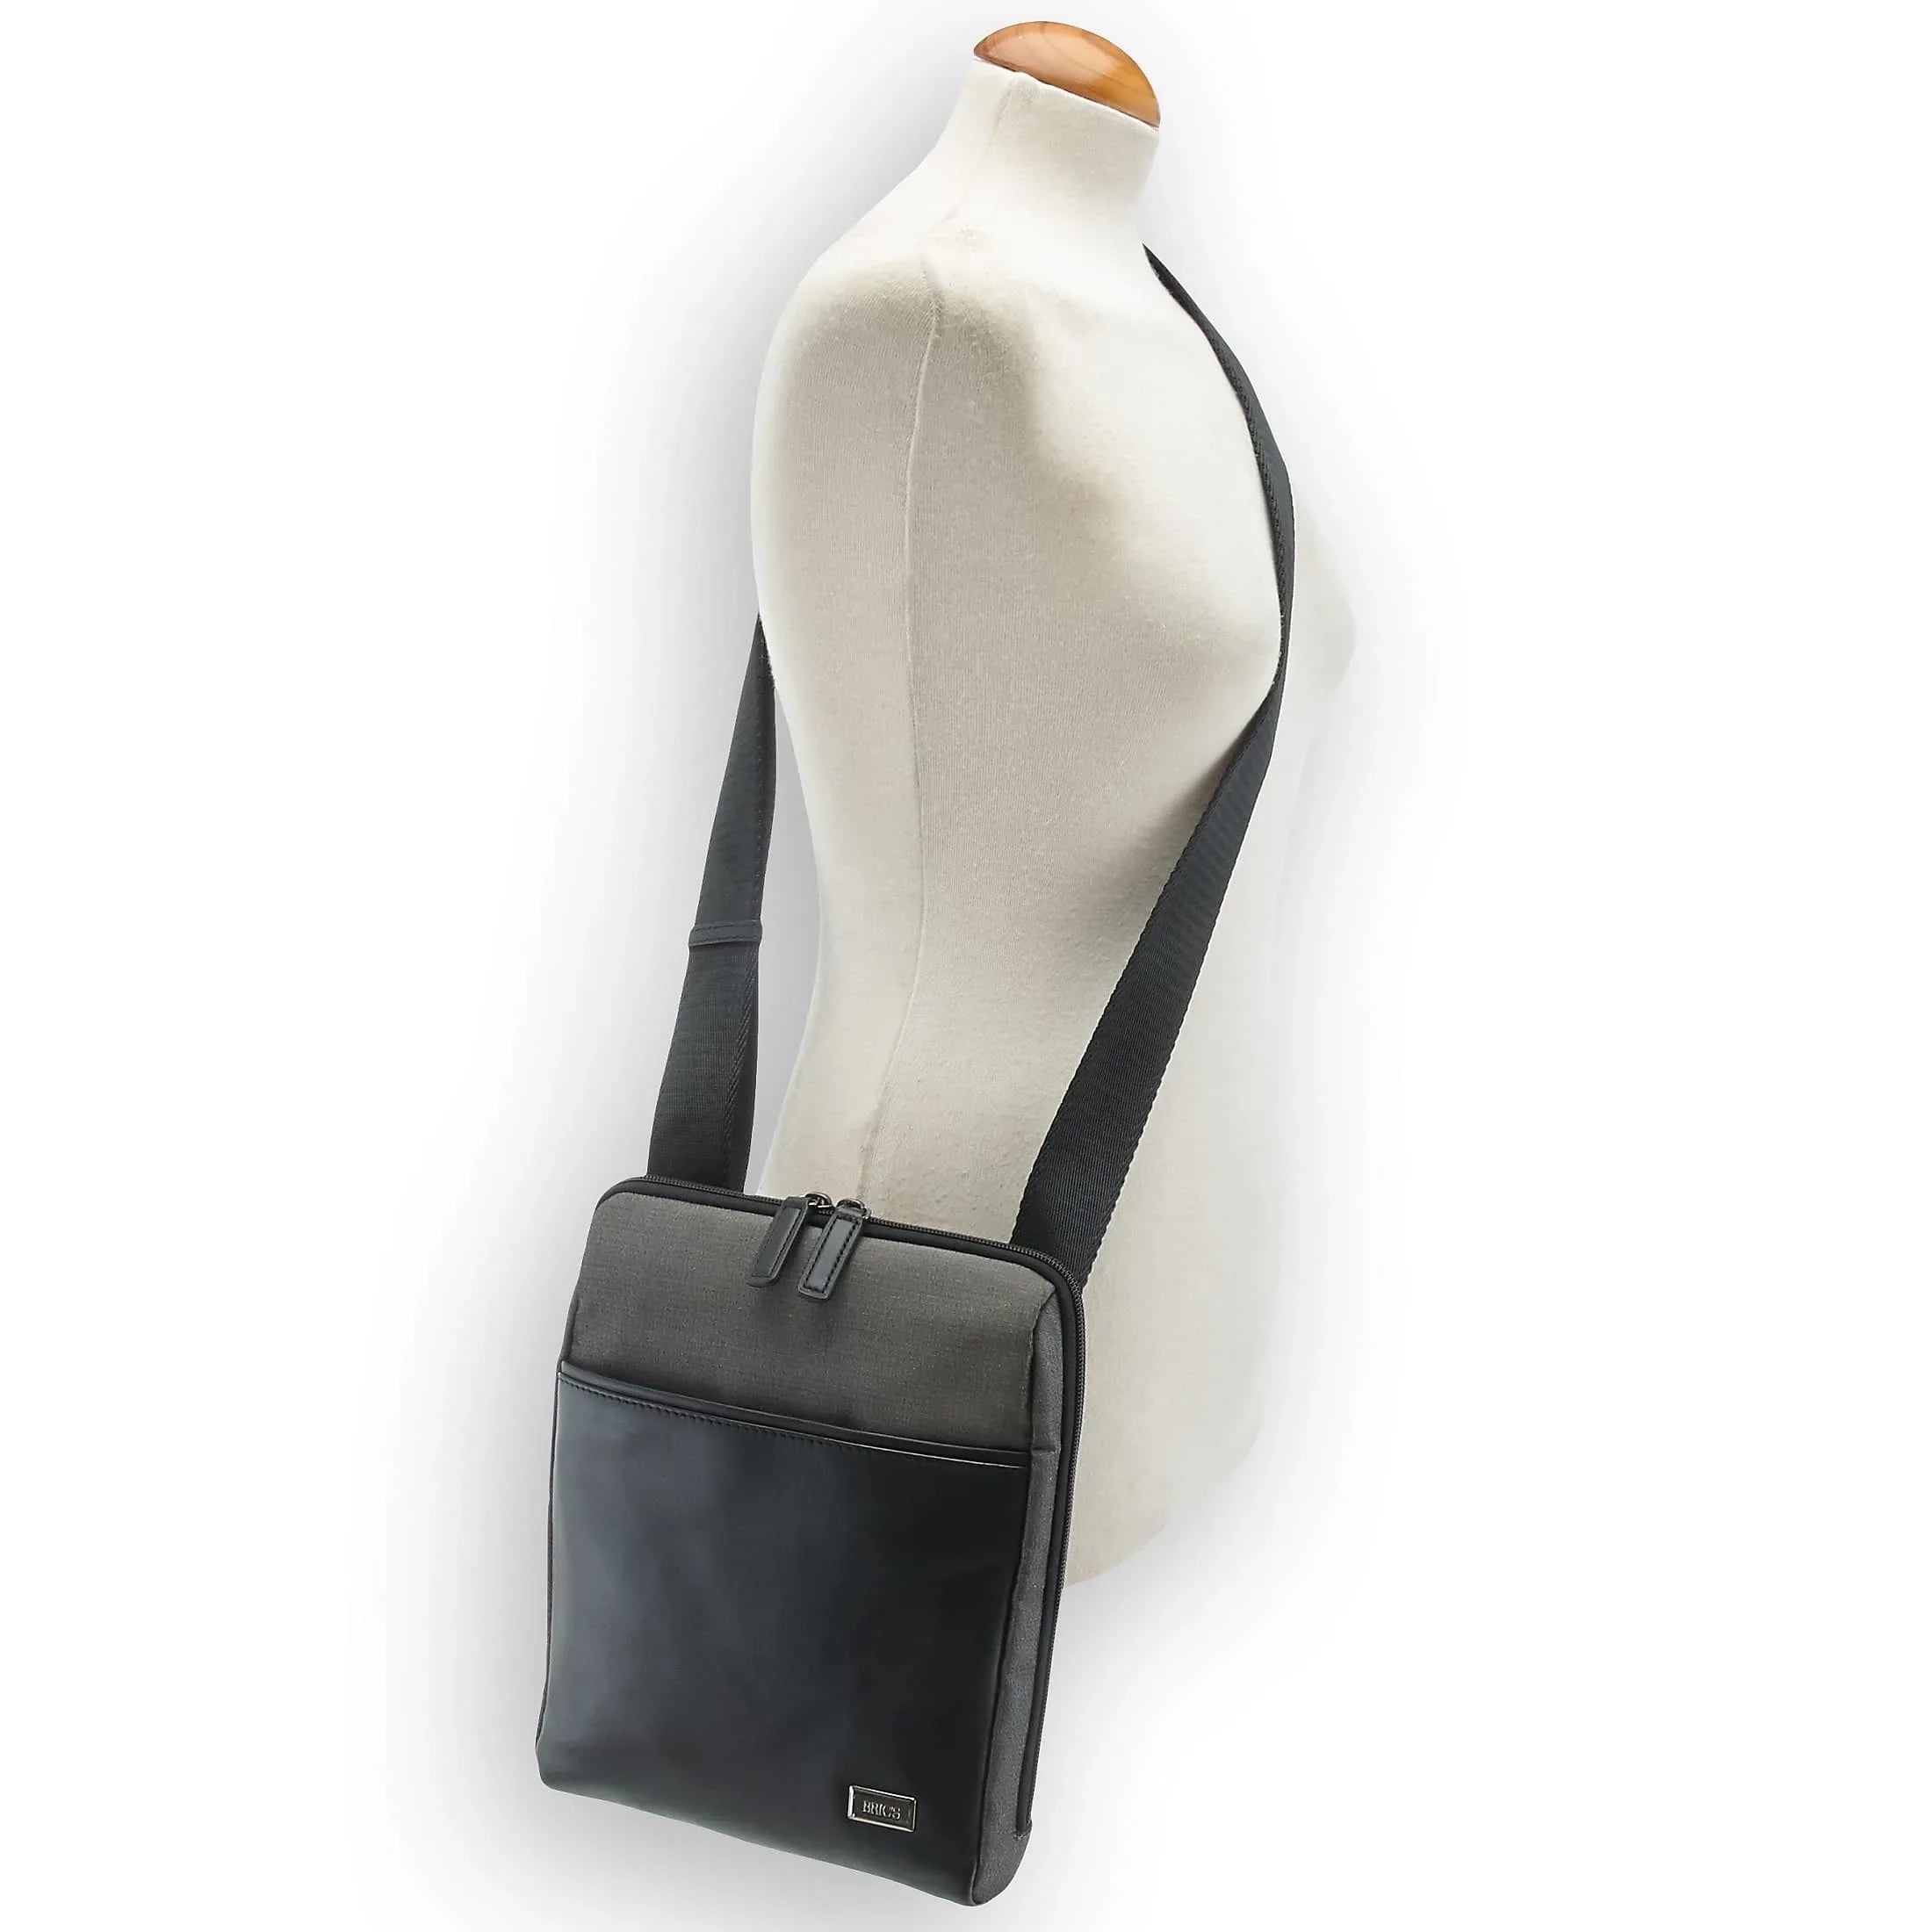 Brics Monza shoulder bag 27 cm - black